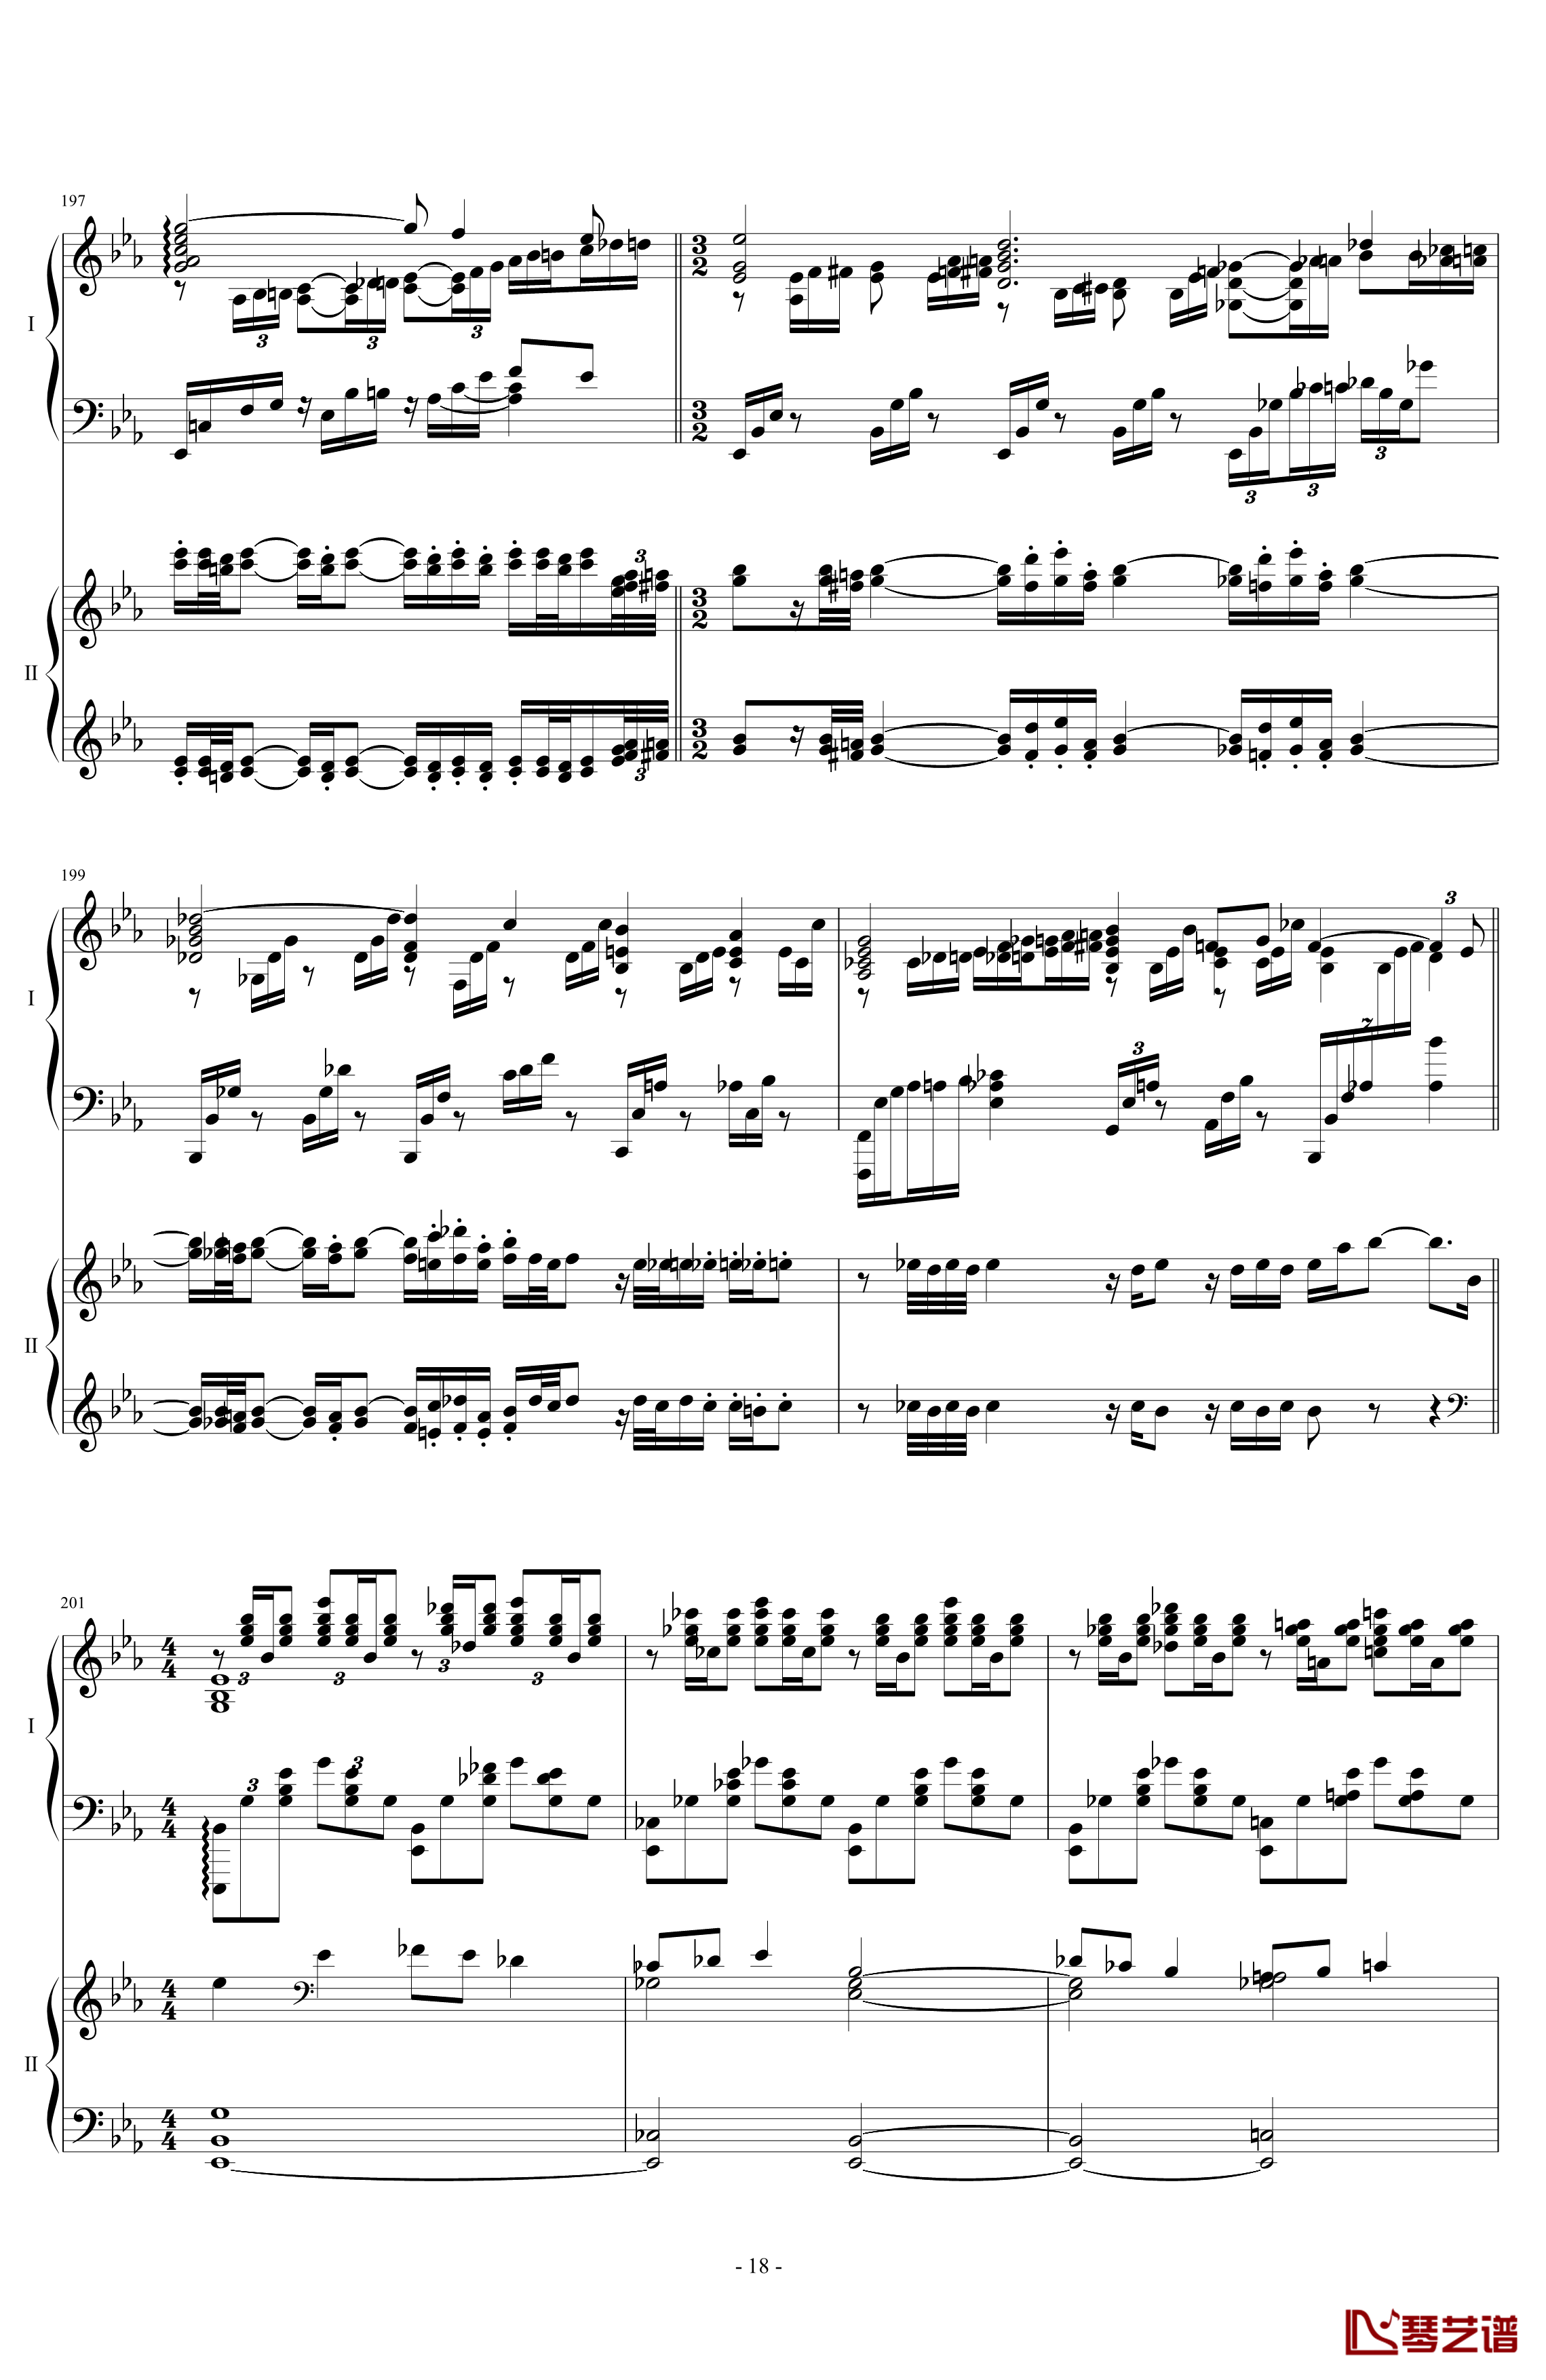 拉三第三乐章41页双钢琴钢琴谱-最难钢琴曲-拉赫马尼若夫18